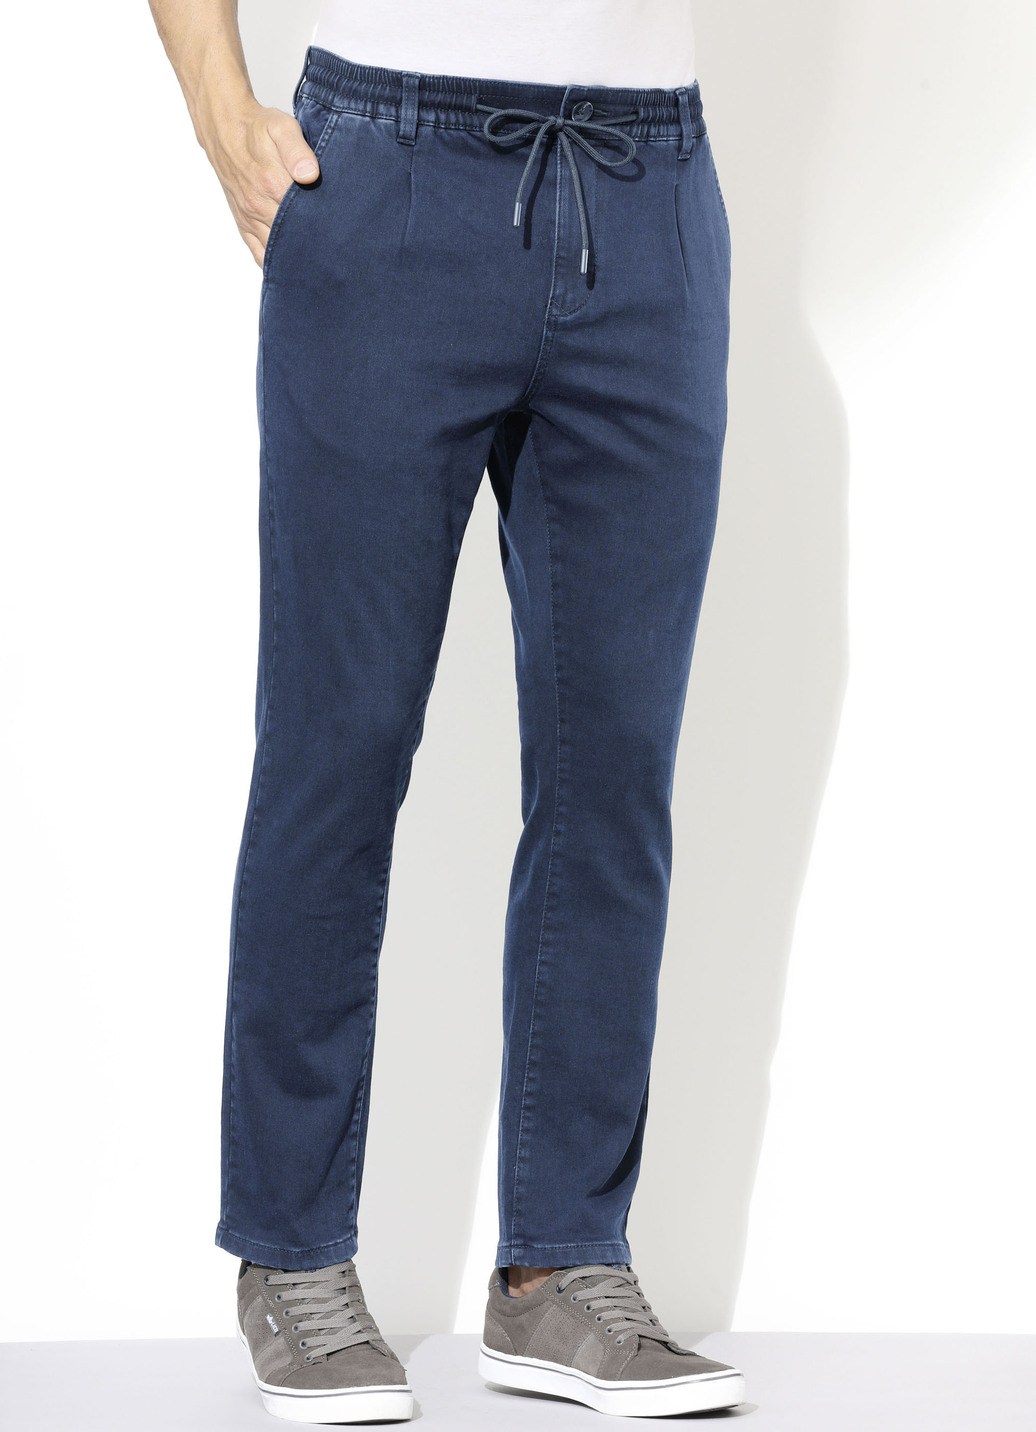 Superstretch-Jeans in 3 Farben, Jeansblau, Größe 30 von DANNECKER